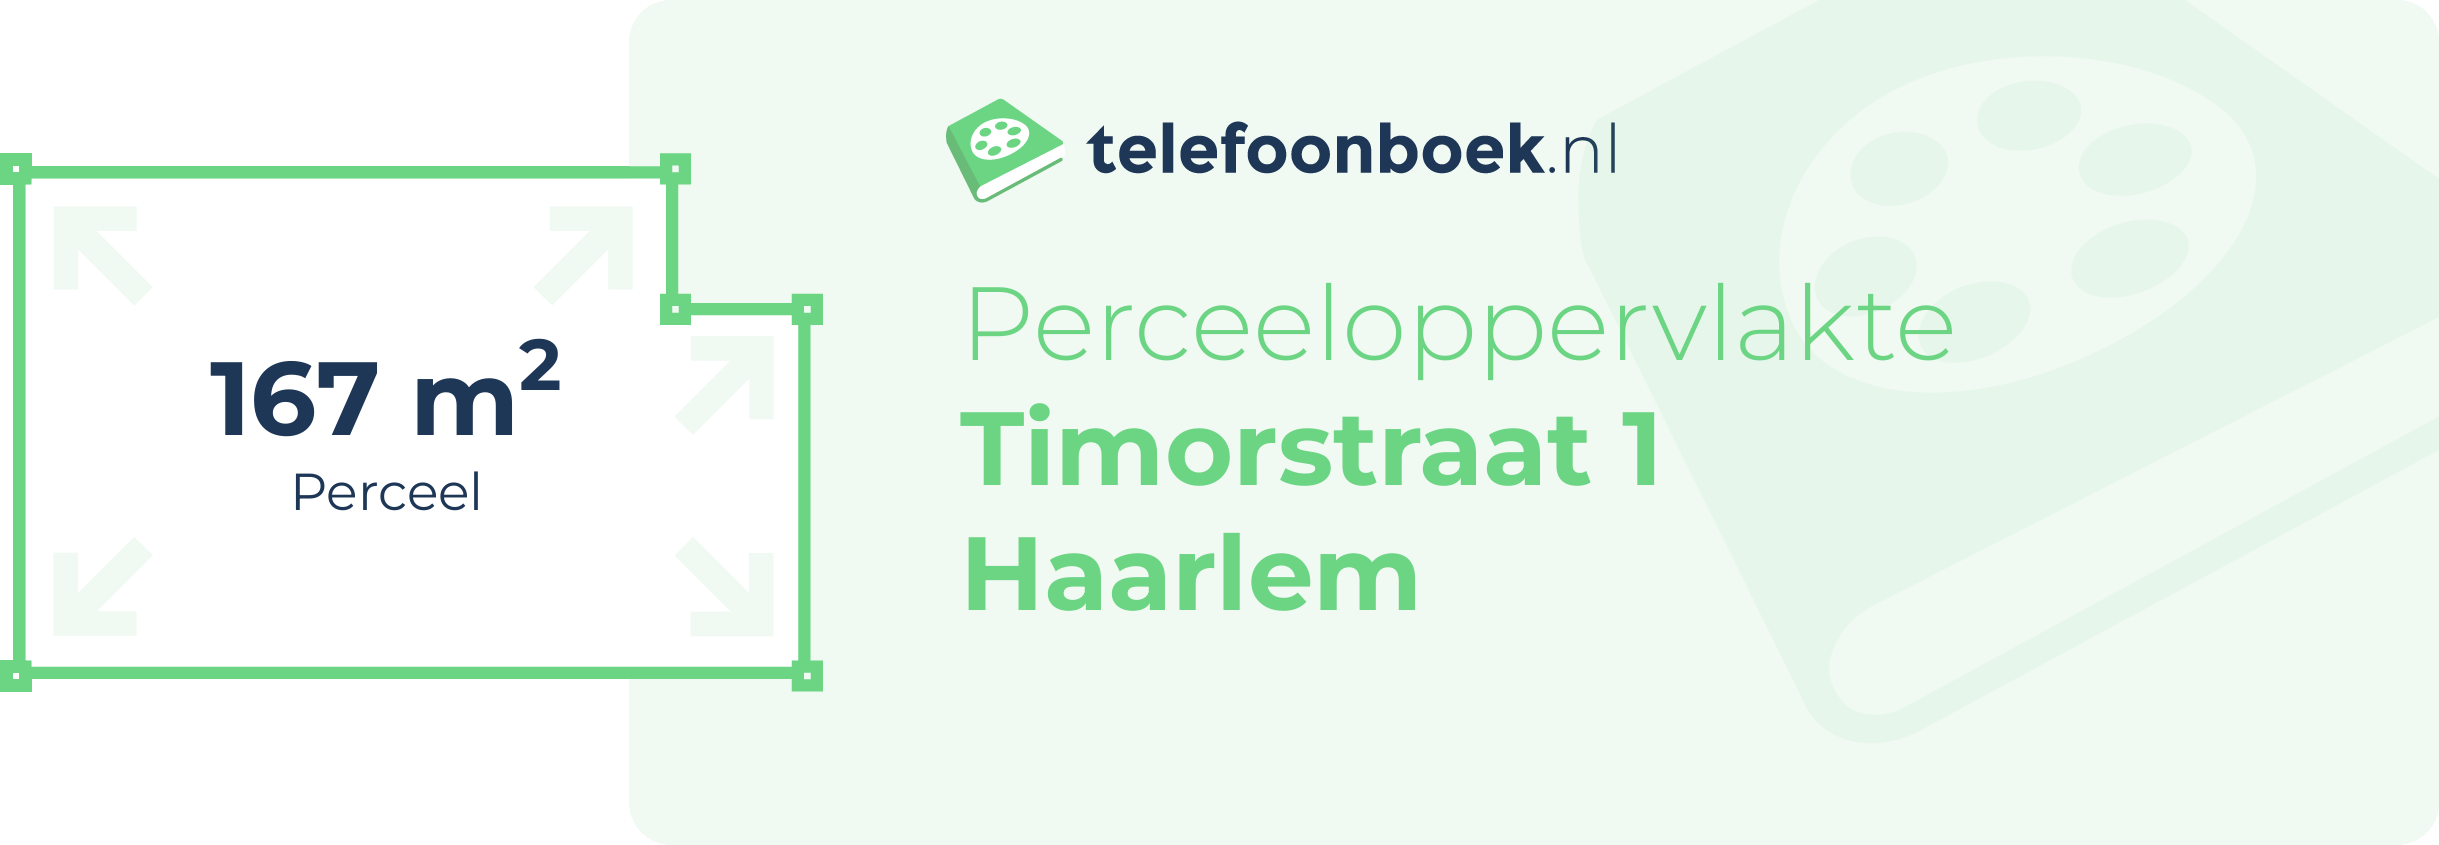 Perceeloppervlakte Timorstraat 1 Haarlem